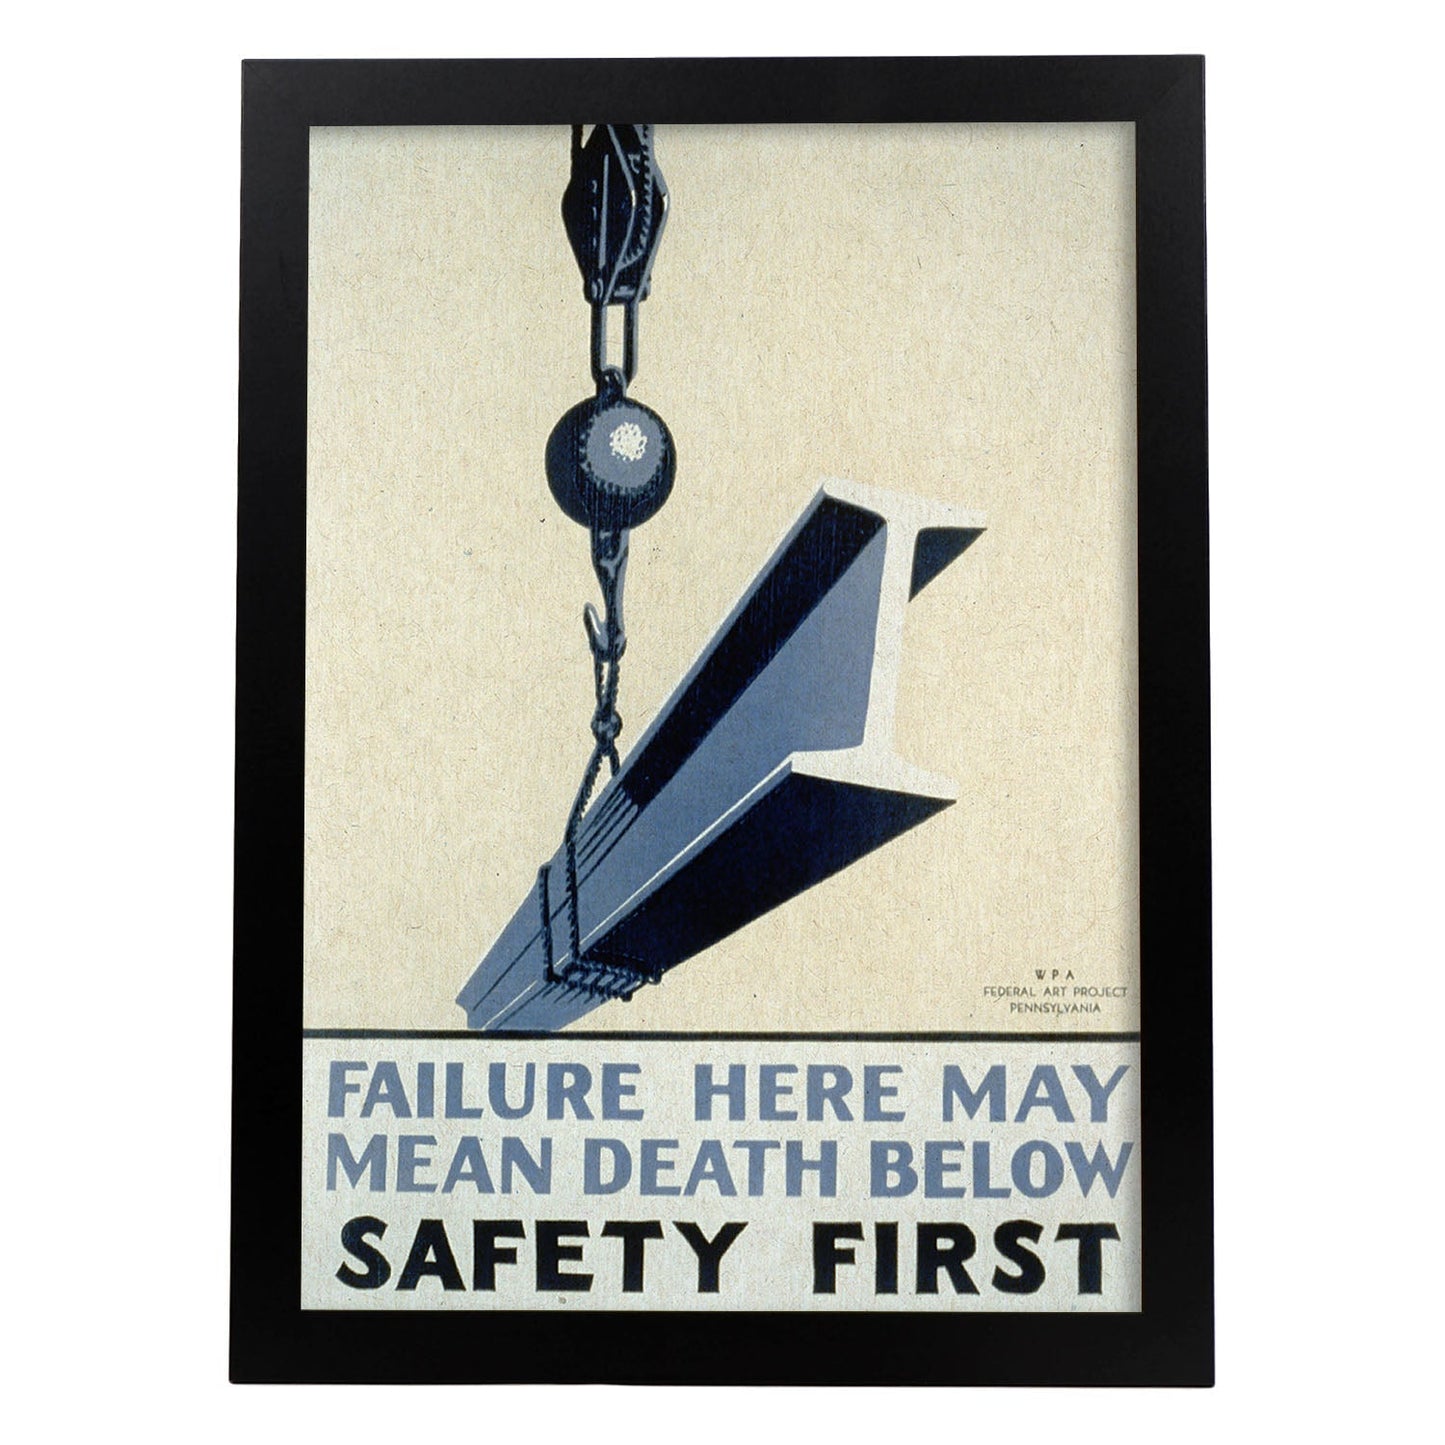 Poster vintage. Cartel vintage del departamento federal de Pennsylvania "Safety first".-Artwork-Nacnic-A4-Marco Negro-Nacnic Estudio SL